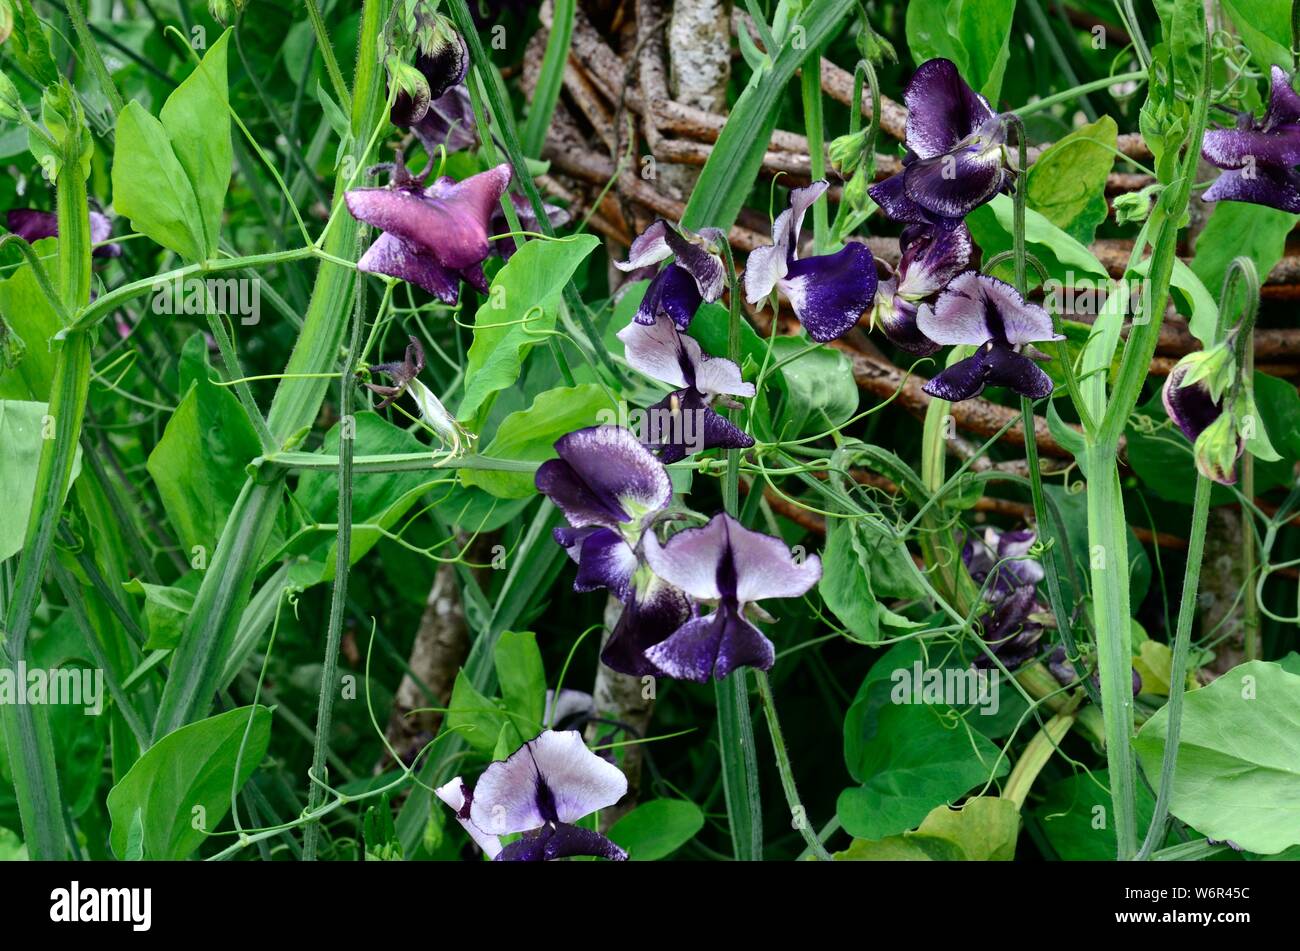 Lathus adoratus Sweet pea Earl Grey Earl Grey kastanienbraun Violett bicolor Blumen als Flocken mit weißen Blumen Stockfoto